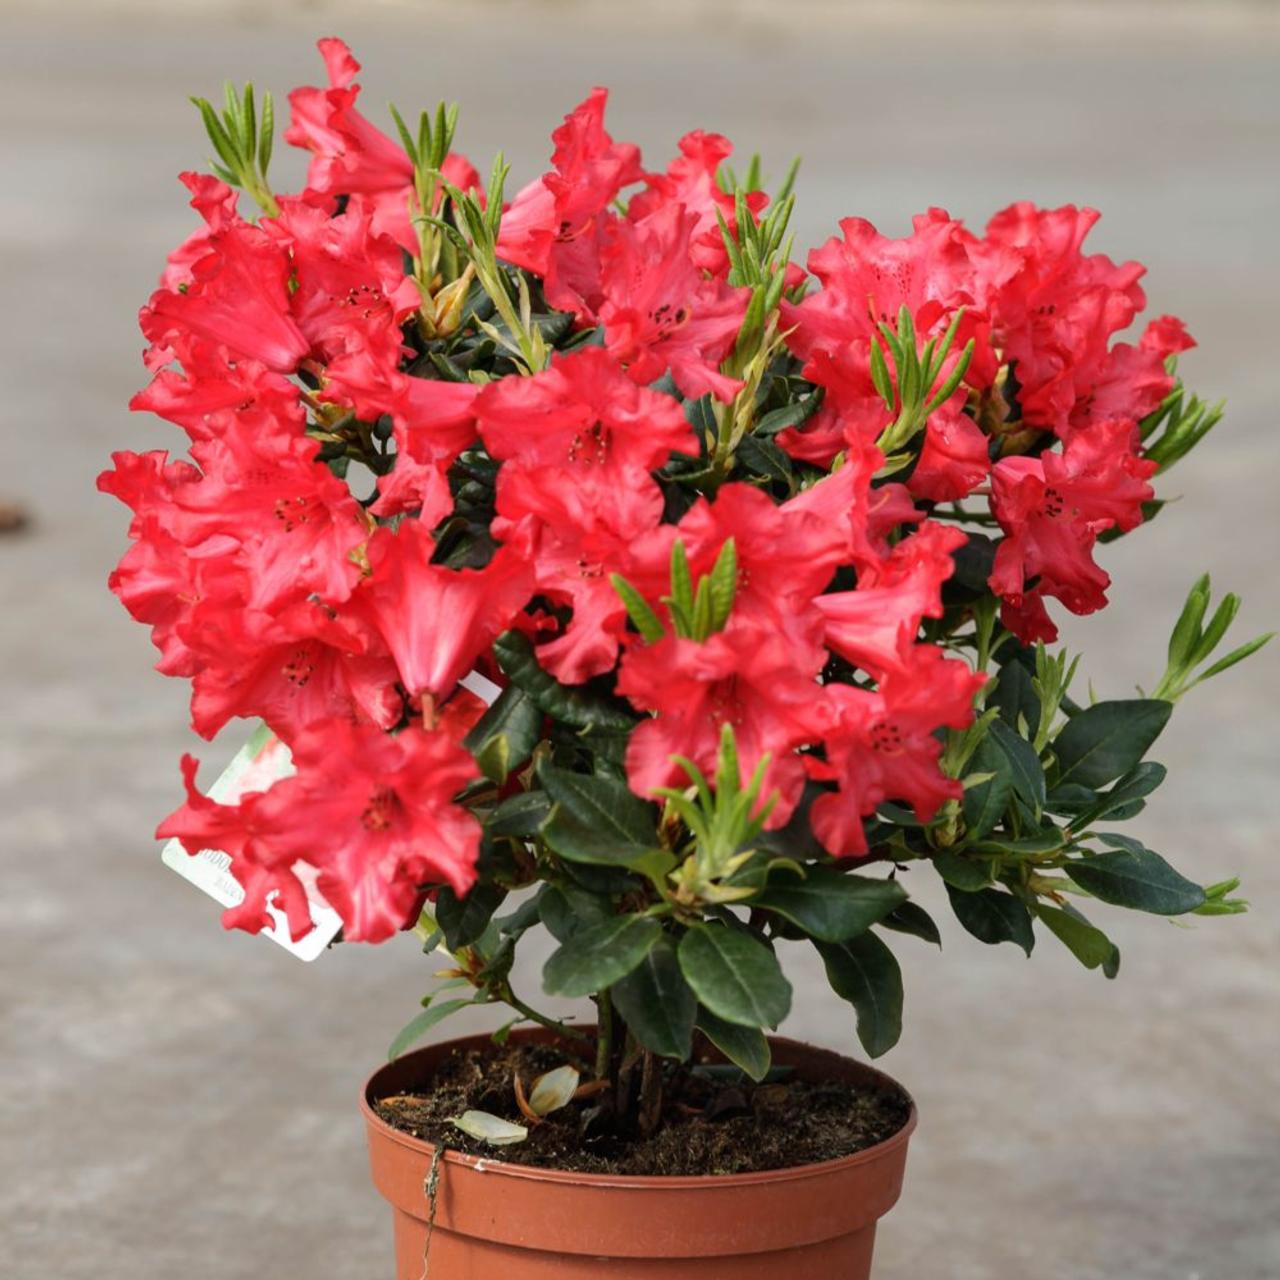 Rhododendron 'Baden Baden' - buy Coolplants